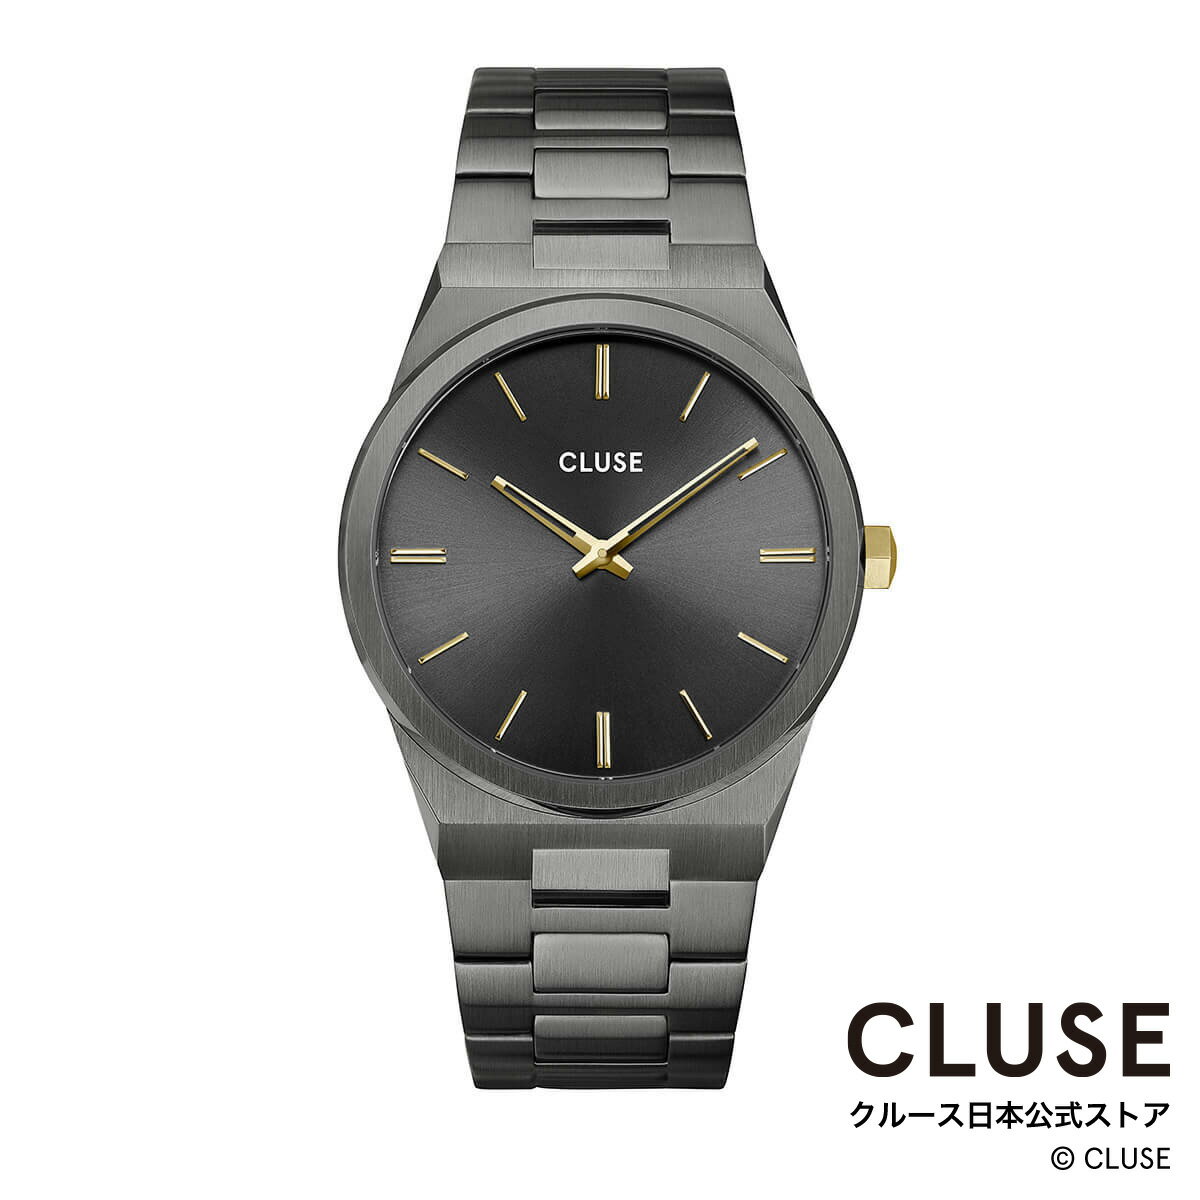 クルース CLUSE 正規品 無料ギフト包装 ラッピング 送料無料 ブランド シンプル ラウンド 丸型 文字盤 グレー 灰